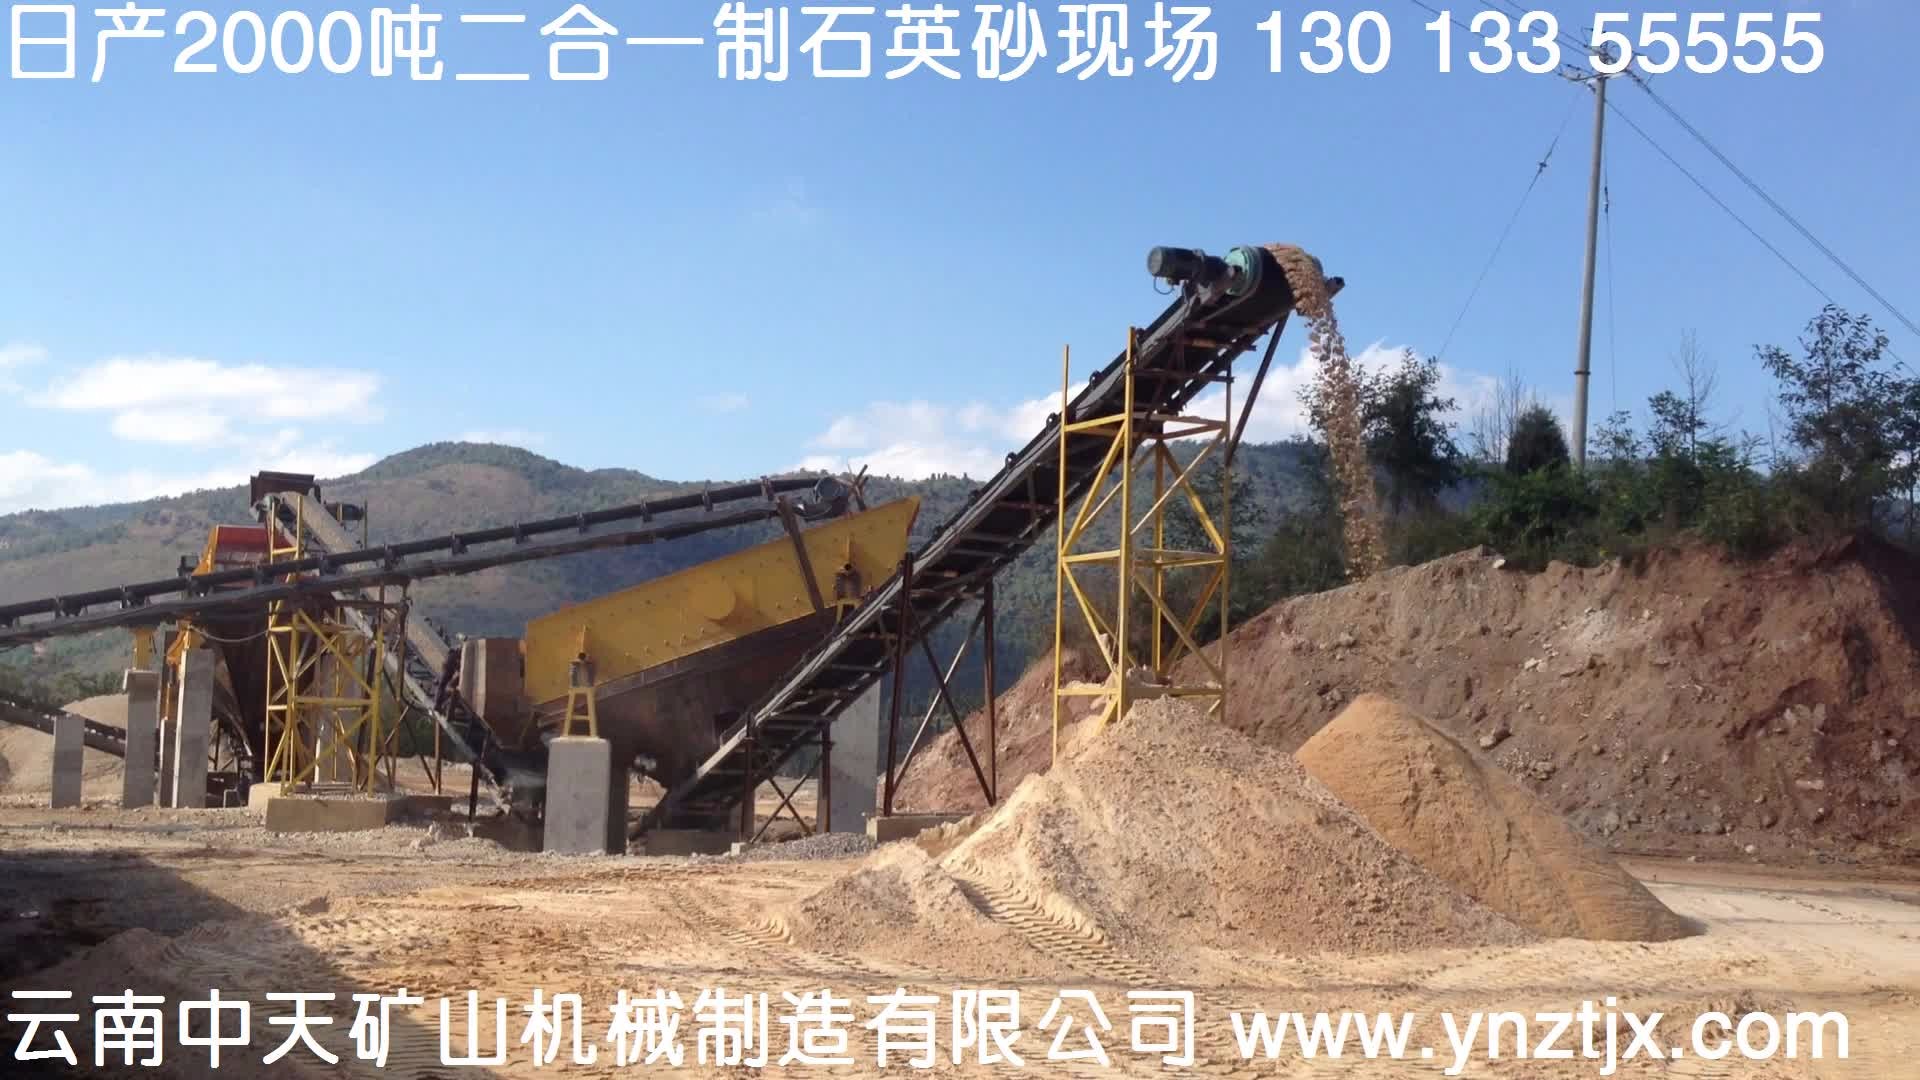 云南日产2000吨二合一制石英砂生产线一